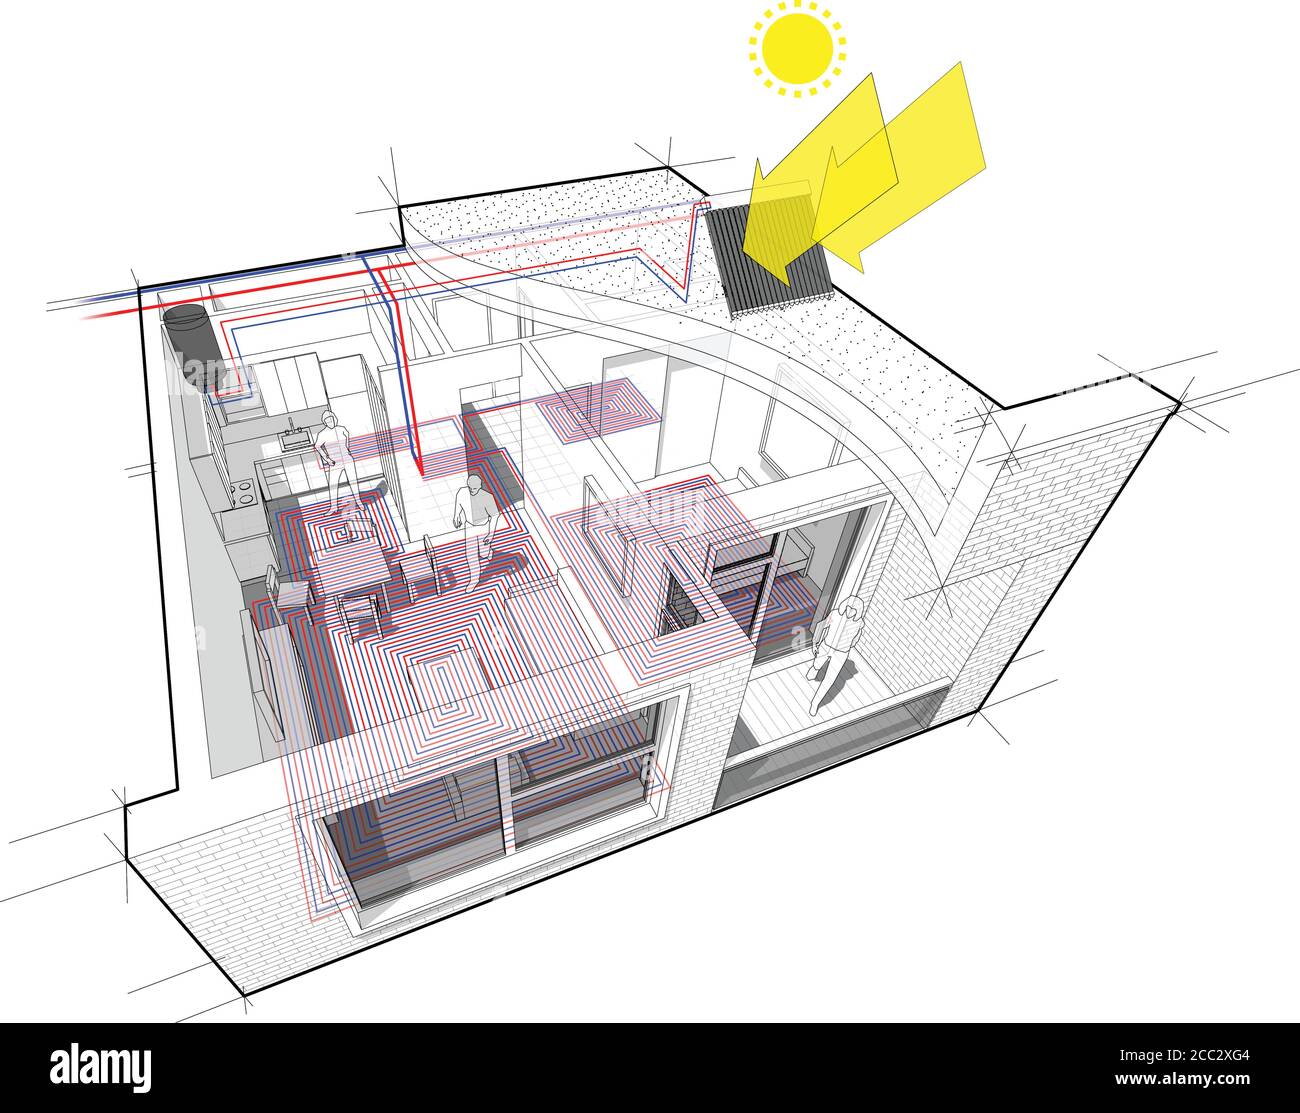 appartamento con riscaldamento a pavimento con acqua calda e riscaldamento centralizzato come fonte di energia di riscaldamento con acqua solare supplementare riscaldatore Illustrazione Vettoriale